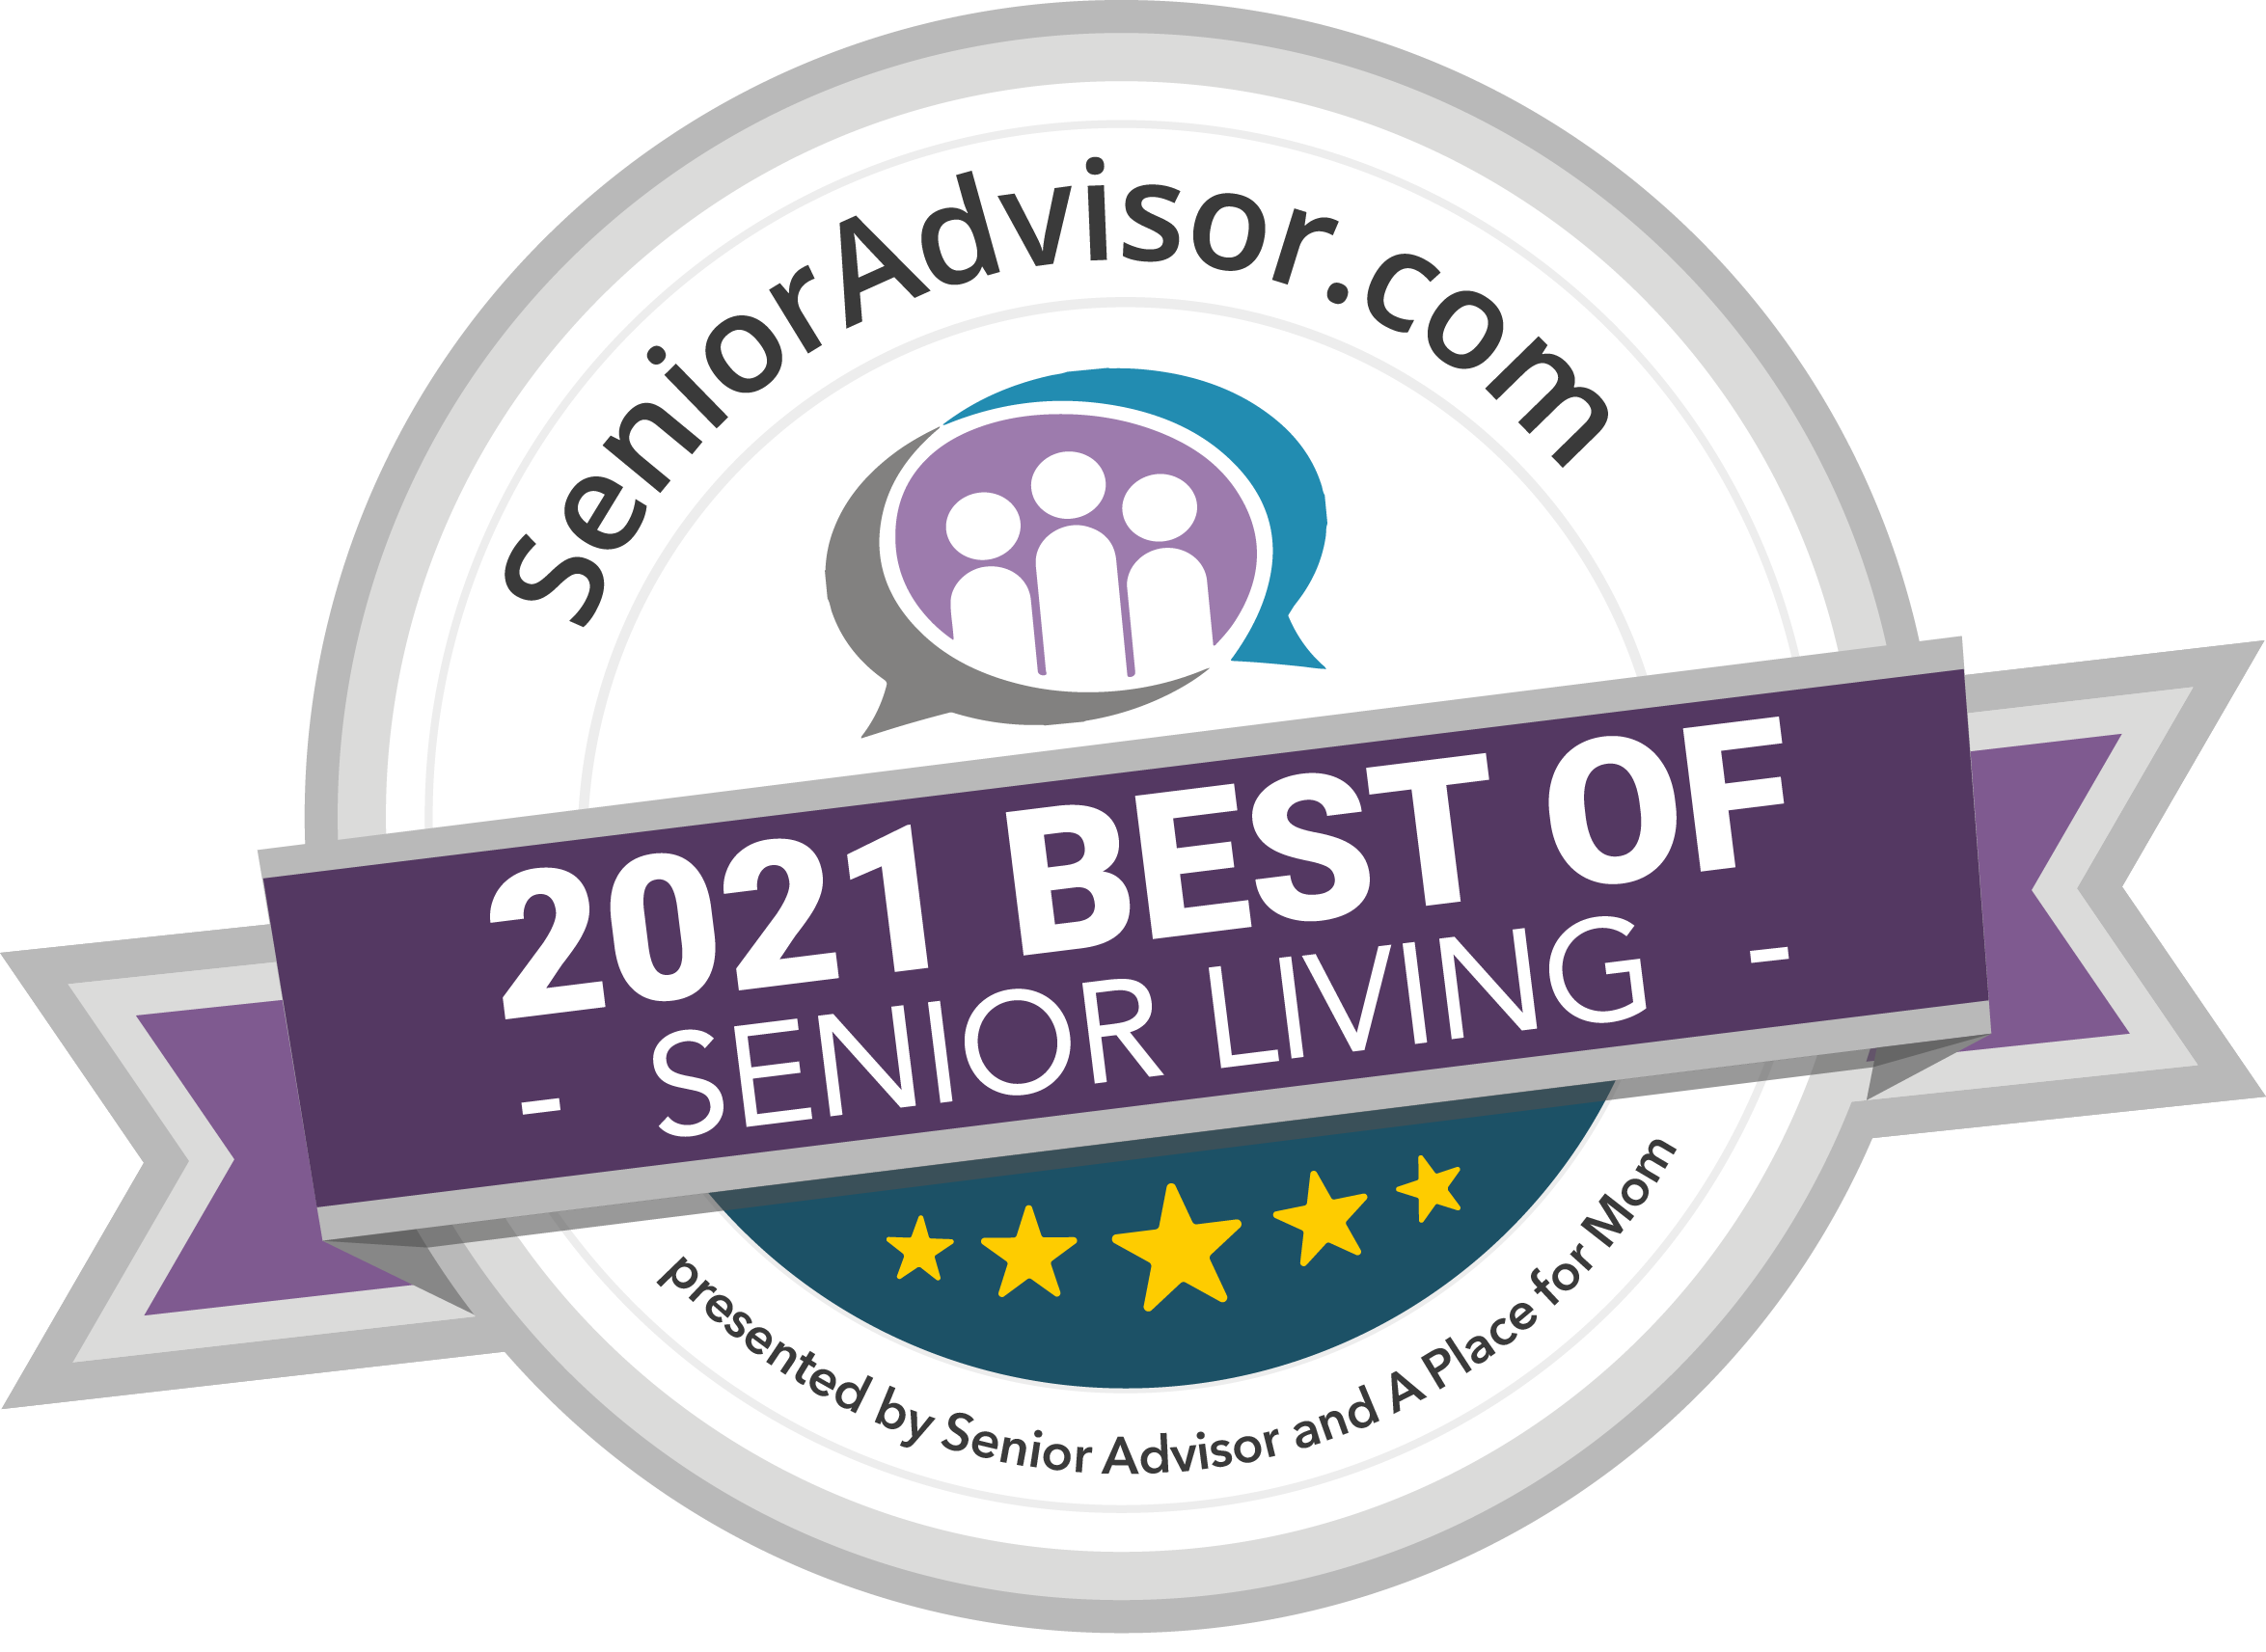 Best of Senior Living 2021 Award